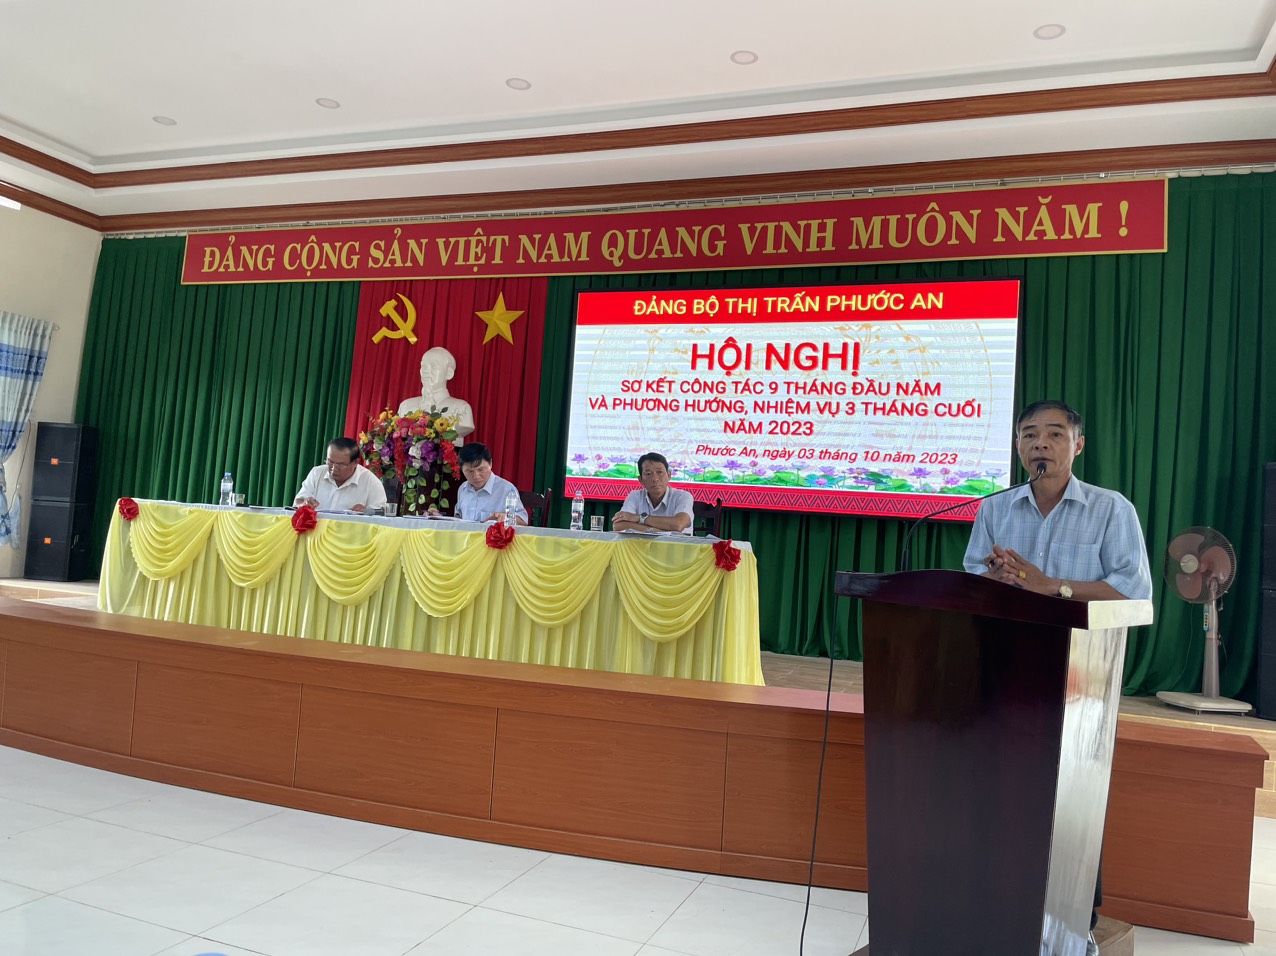 Đảng ủy thị trấn Phước An tổ chức hội nghị Sơ kết 9 tháng đầu năm 2023 và phươnghướng, nhiệm vụ 3 tháng cuối năm 2023.